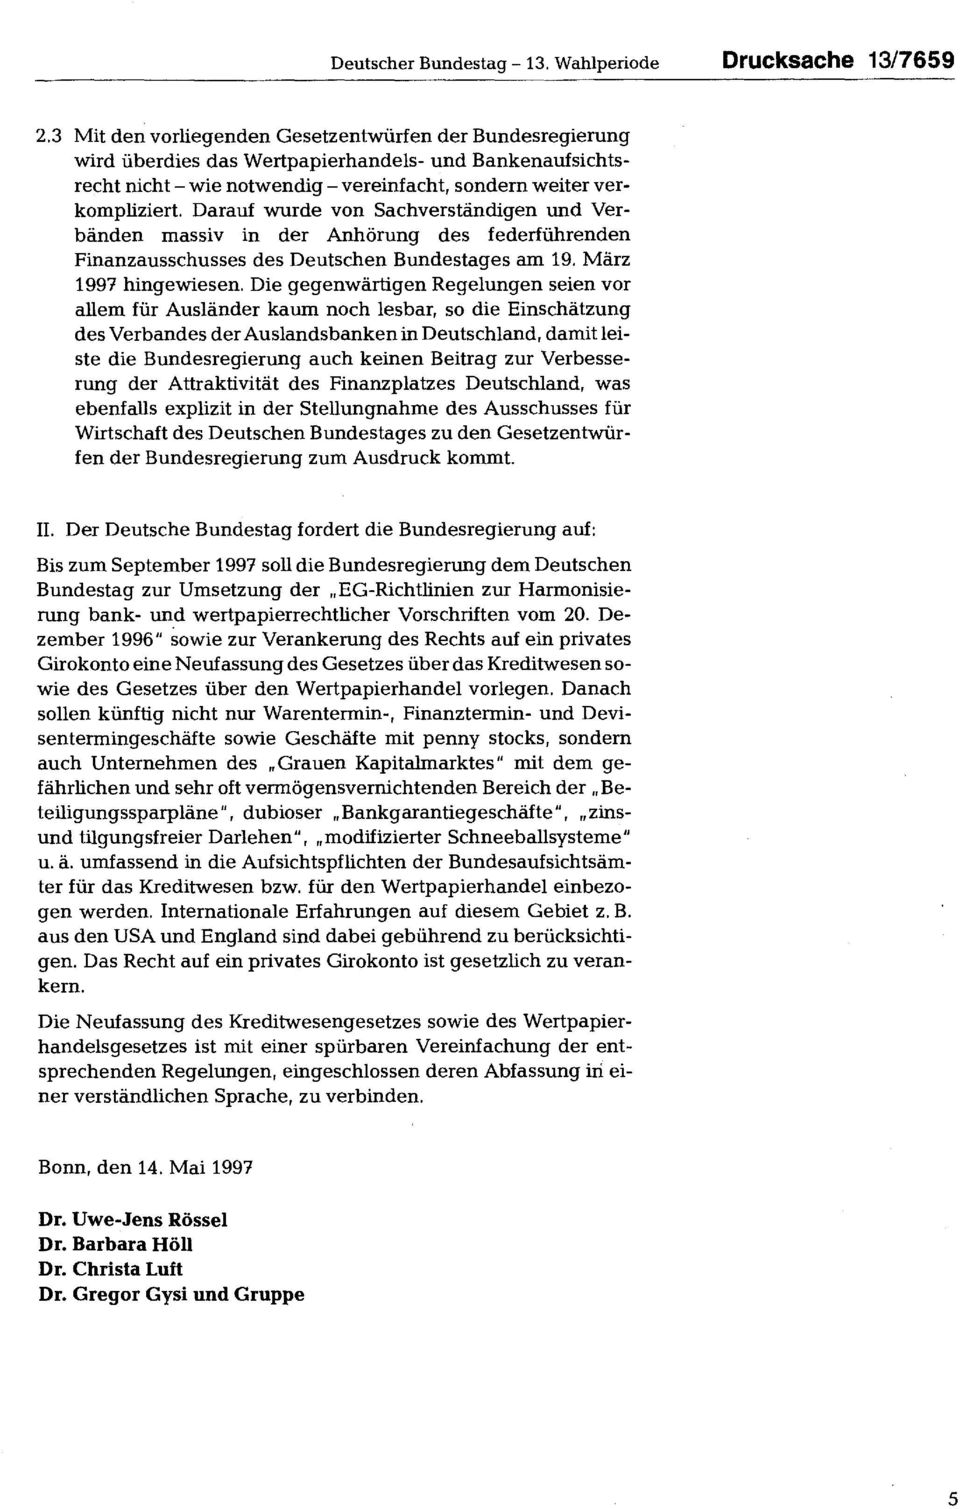 Darauf wurde von Sachverständigen und Verbänden massiv in der Anhörung des federführenden Finanzausschusses des Deutschen Bundestages am 19. März 1997 hingewiesen.